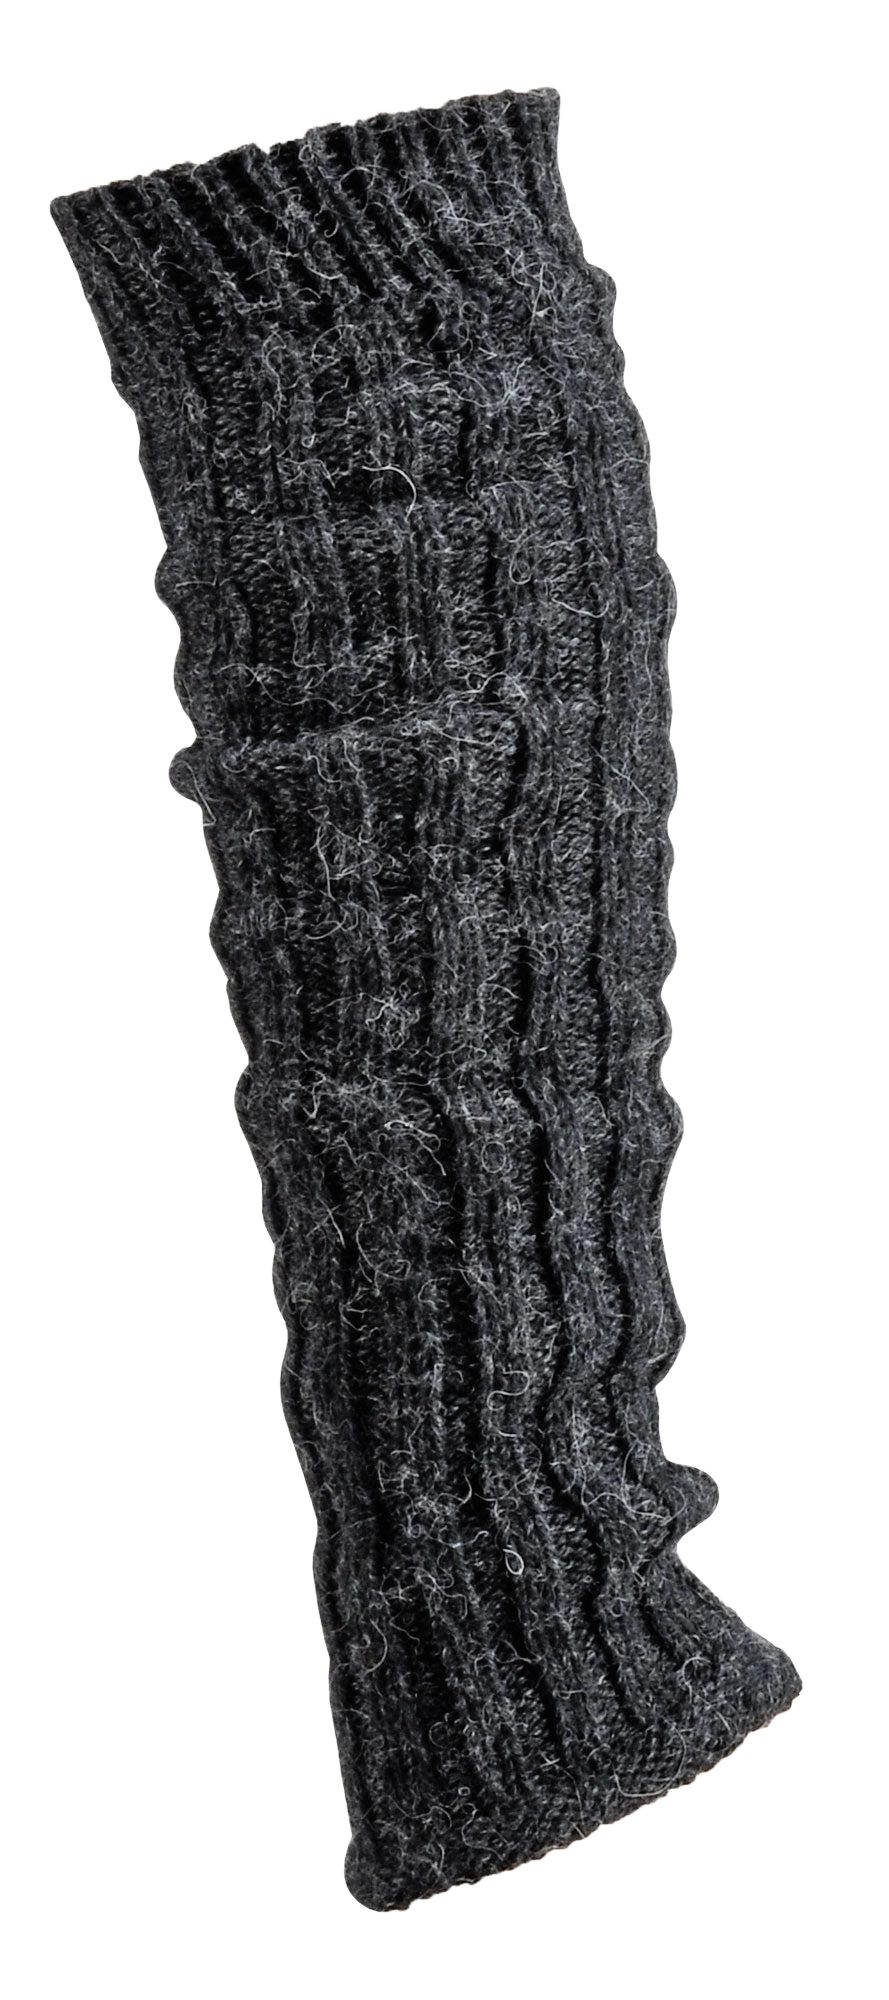 Grobstrick Stulpen Alpakawolle Legwamer Beinwärmer Wadenwärmer hier in der Farbe Grau abgebildet.